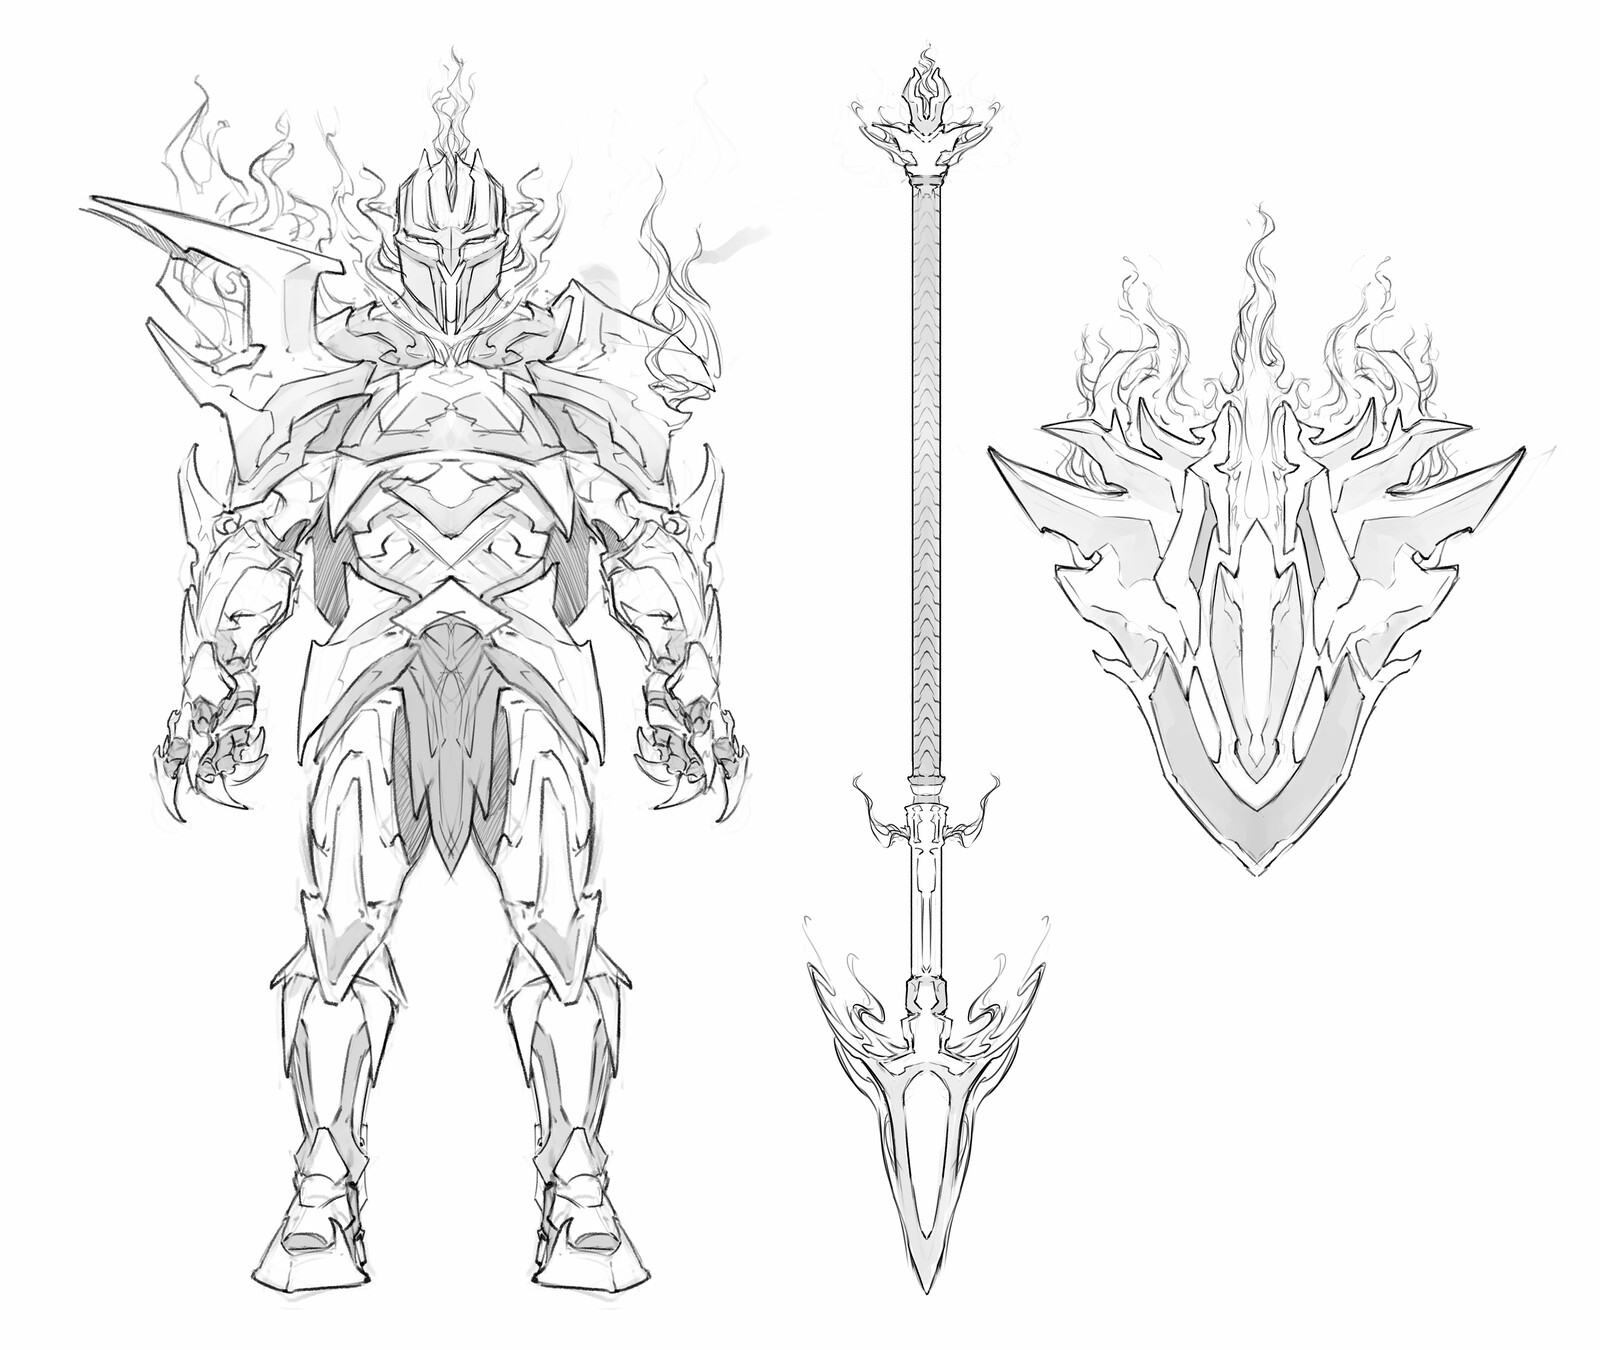 Wraithmarked Creative Concept Sketch - Fire Titan